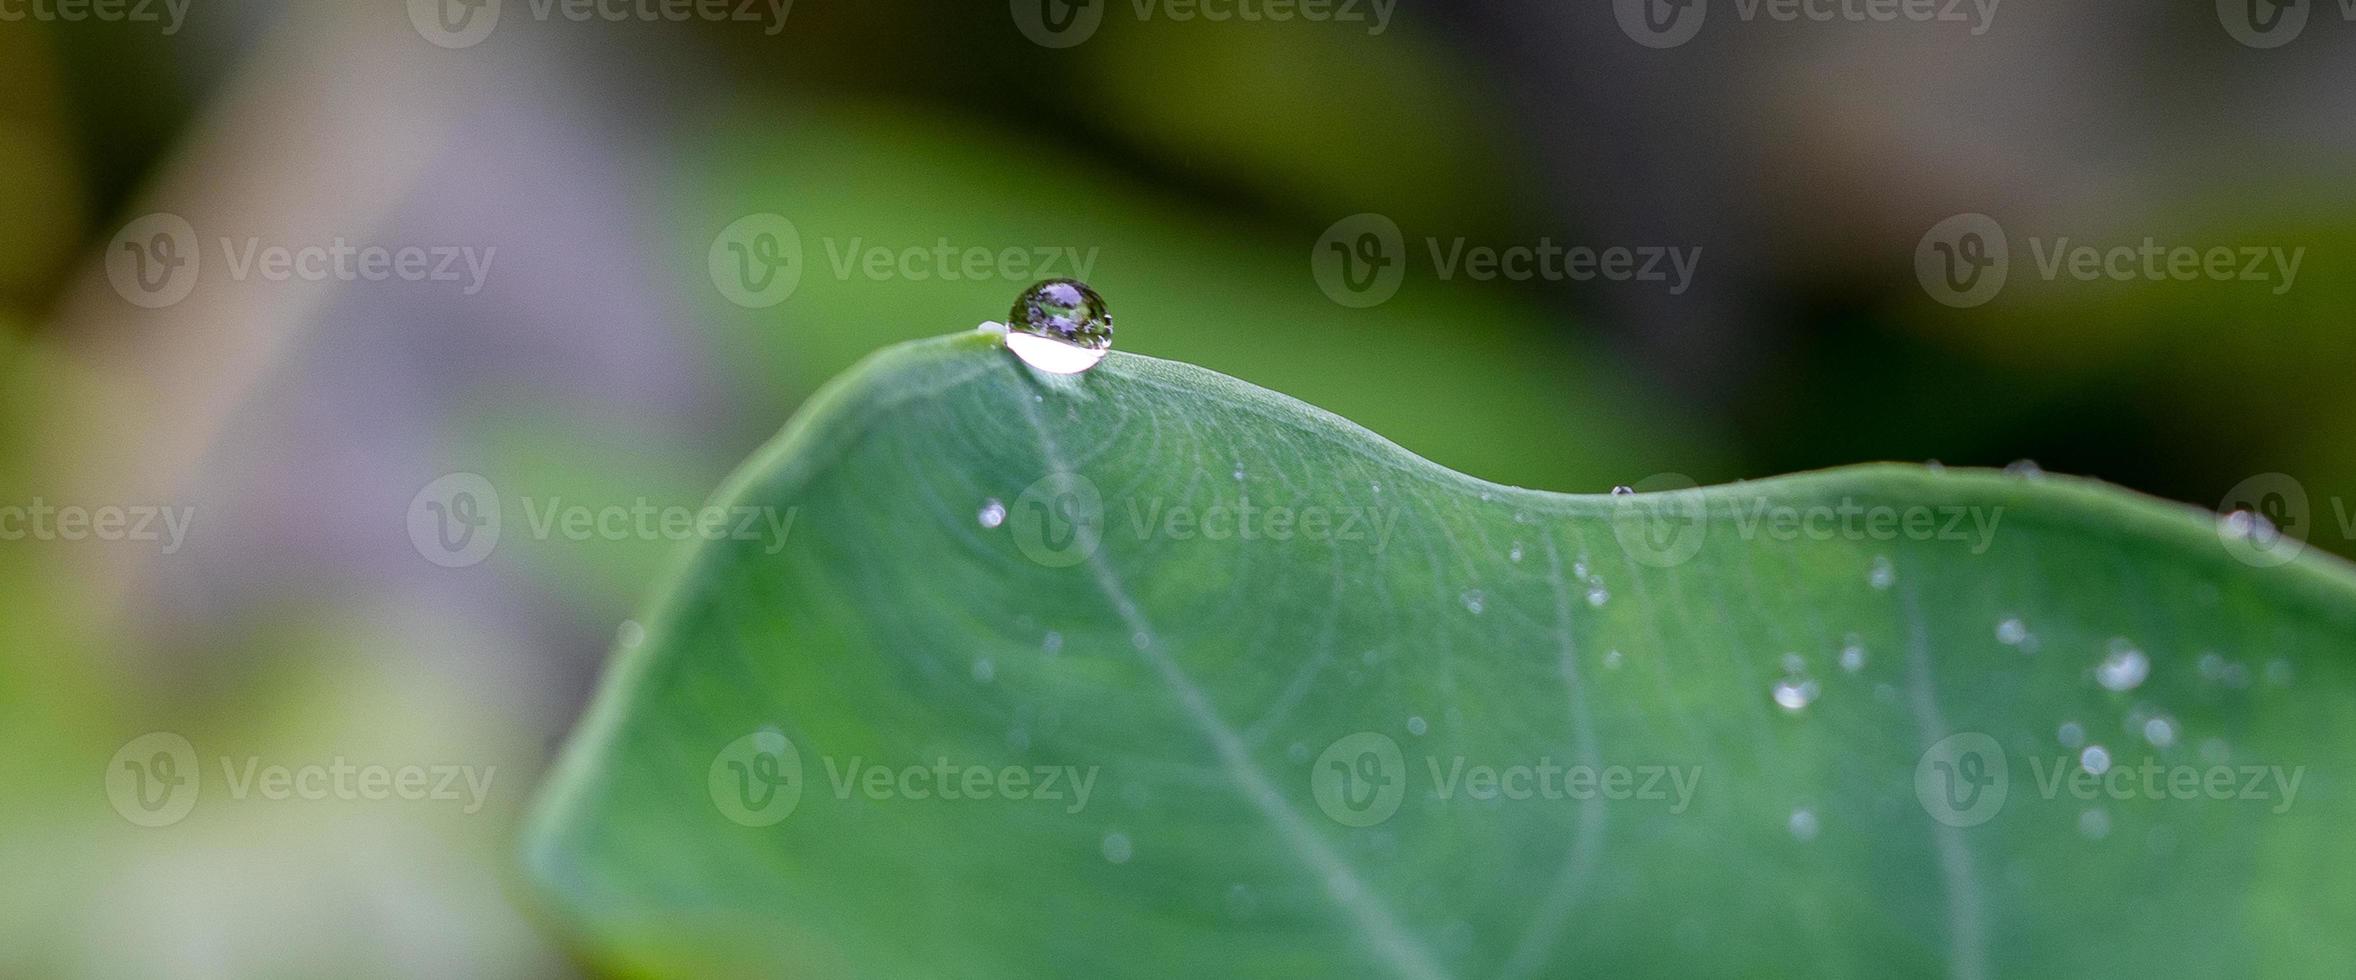 mooi detail van waterdruppels op blad - macrodetail foto